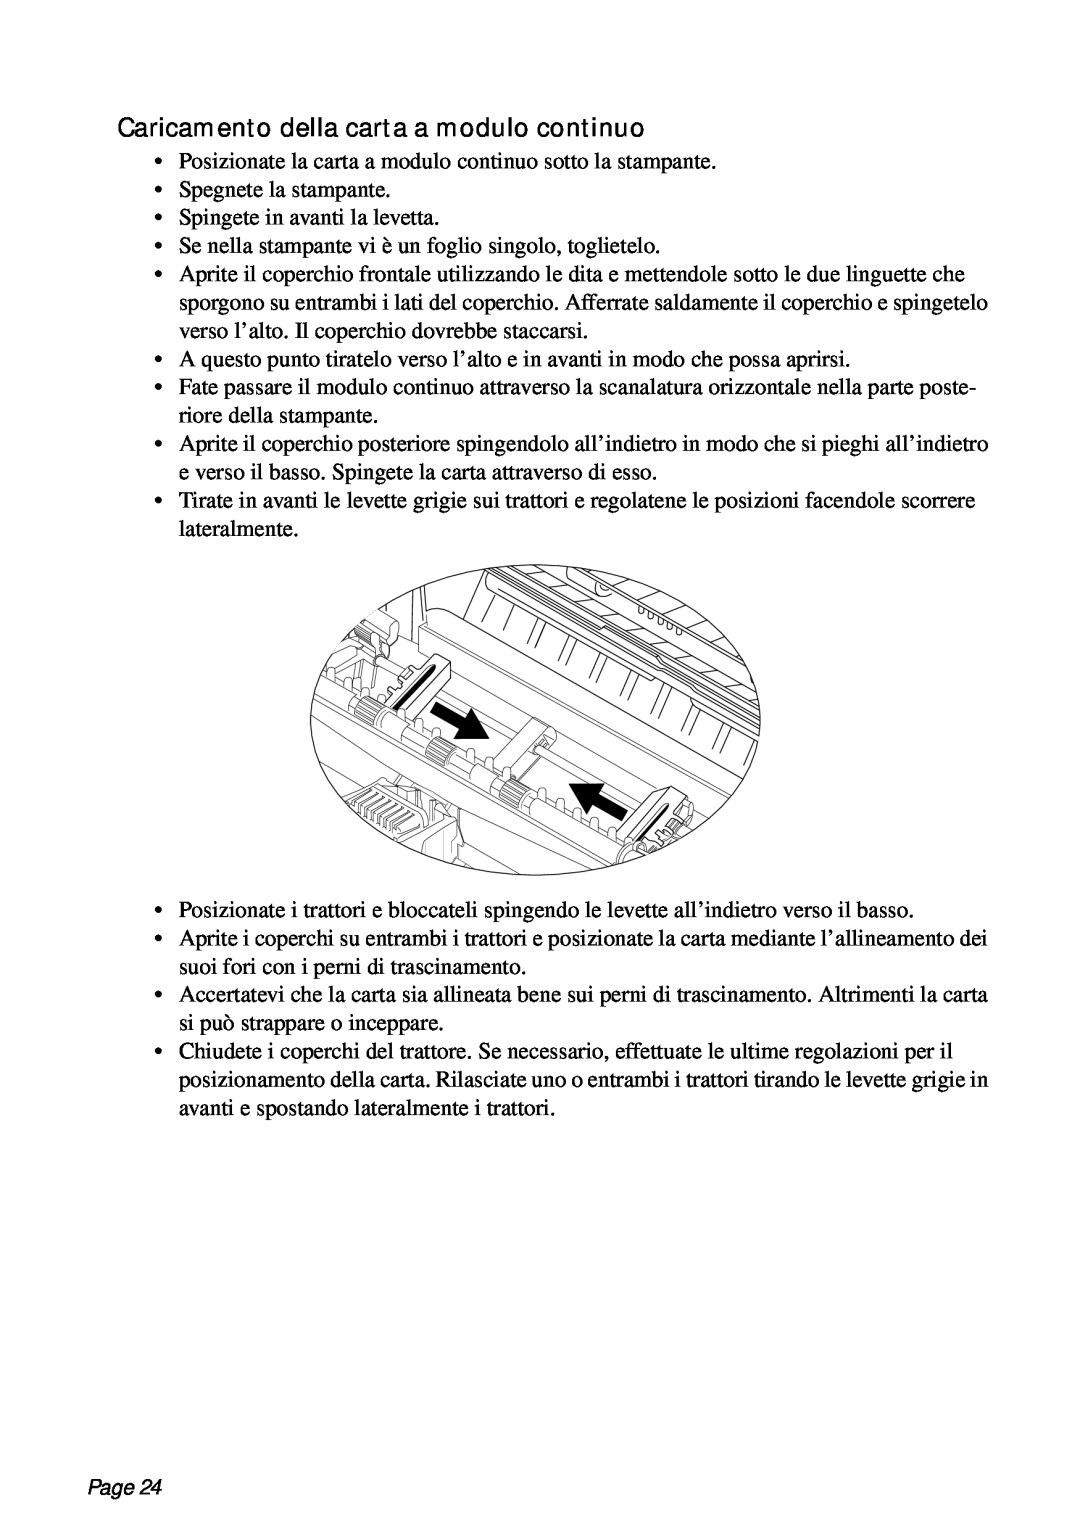 Star Micronics PT-10Q user manual Caricamento della carta a modulo continuo, Page 